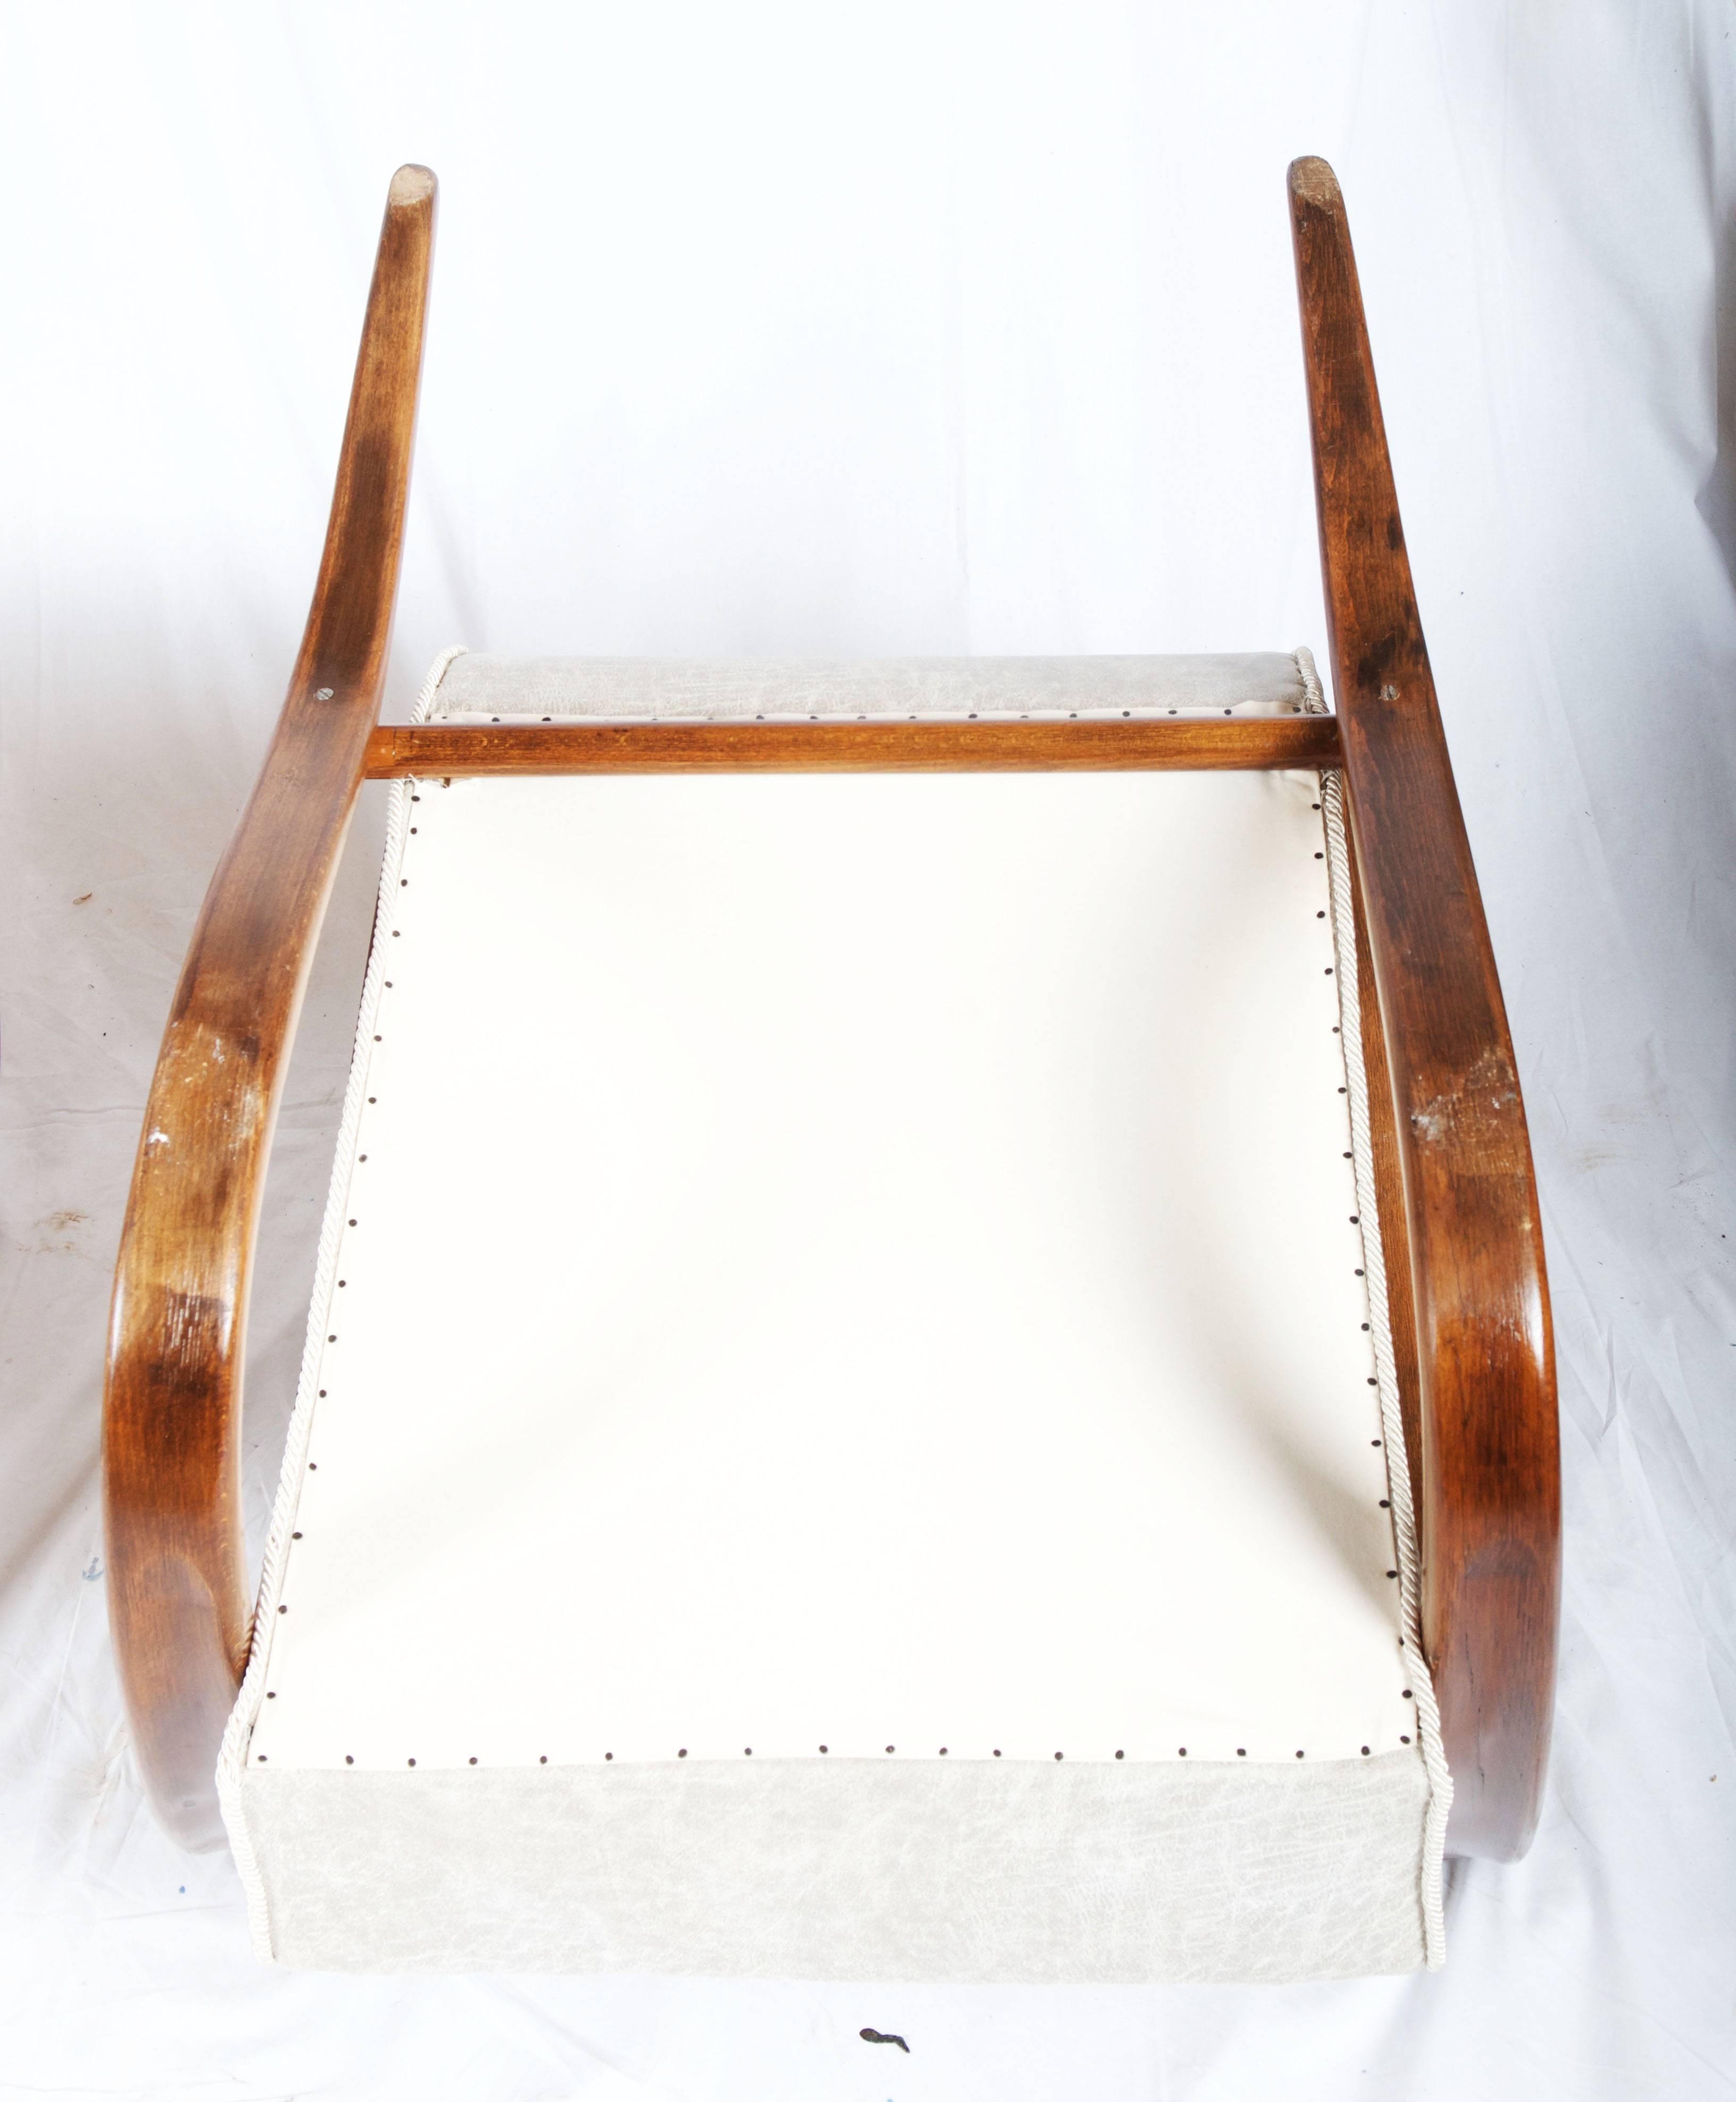 Bugholzsessel aus Buche, nussbaumfarben gebeizt, hergestellt von Thonet in den 1930er Jahren.
Hervorragend restauriert mit Sitzfedern, gepolstert mit Lederimitatstoff.
Andere Stoff- und Holzausführungen auf Anfrage möglich
Auf Anfrage mehrere